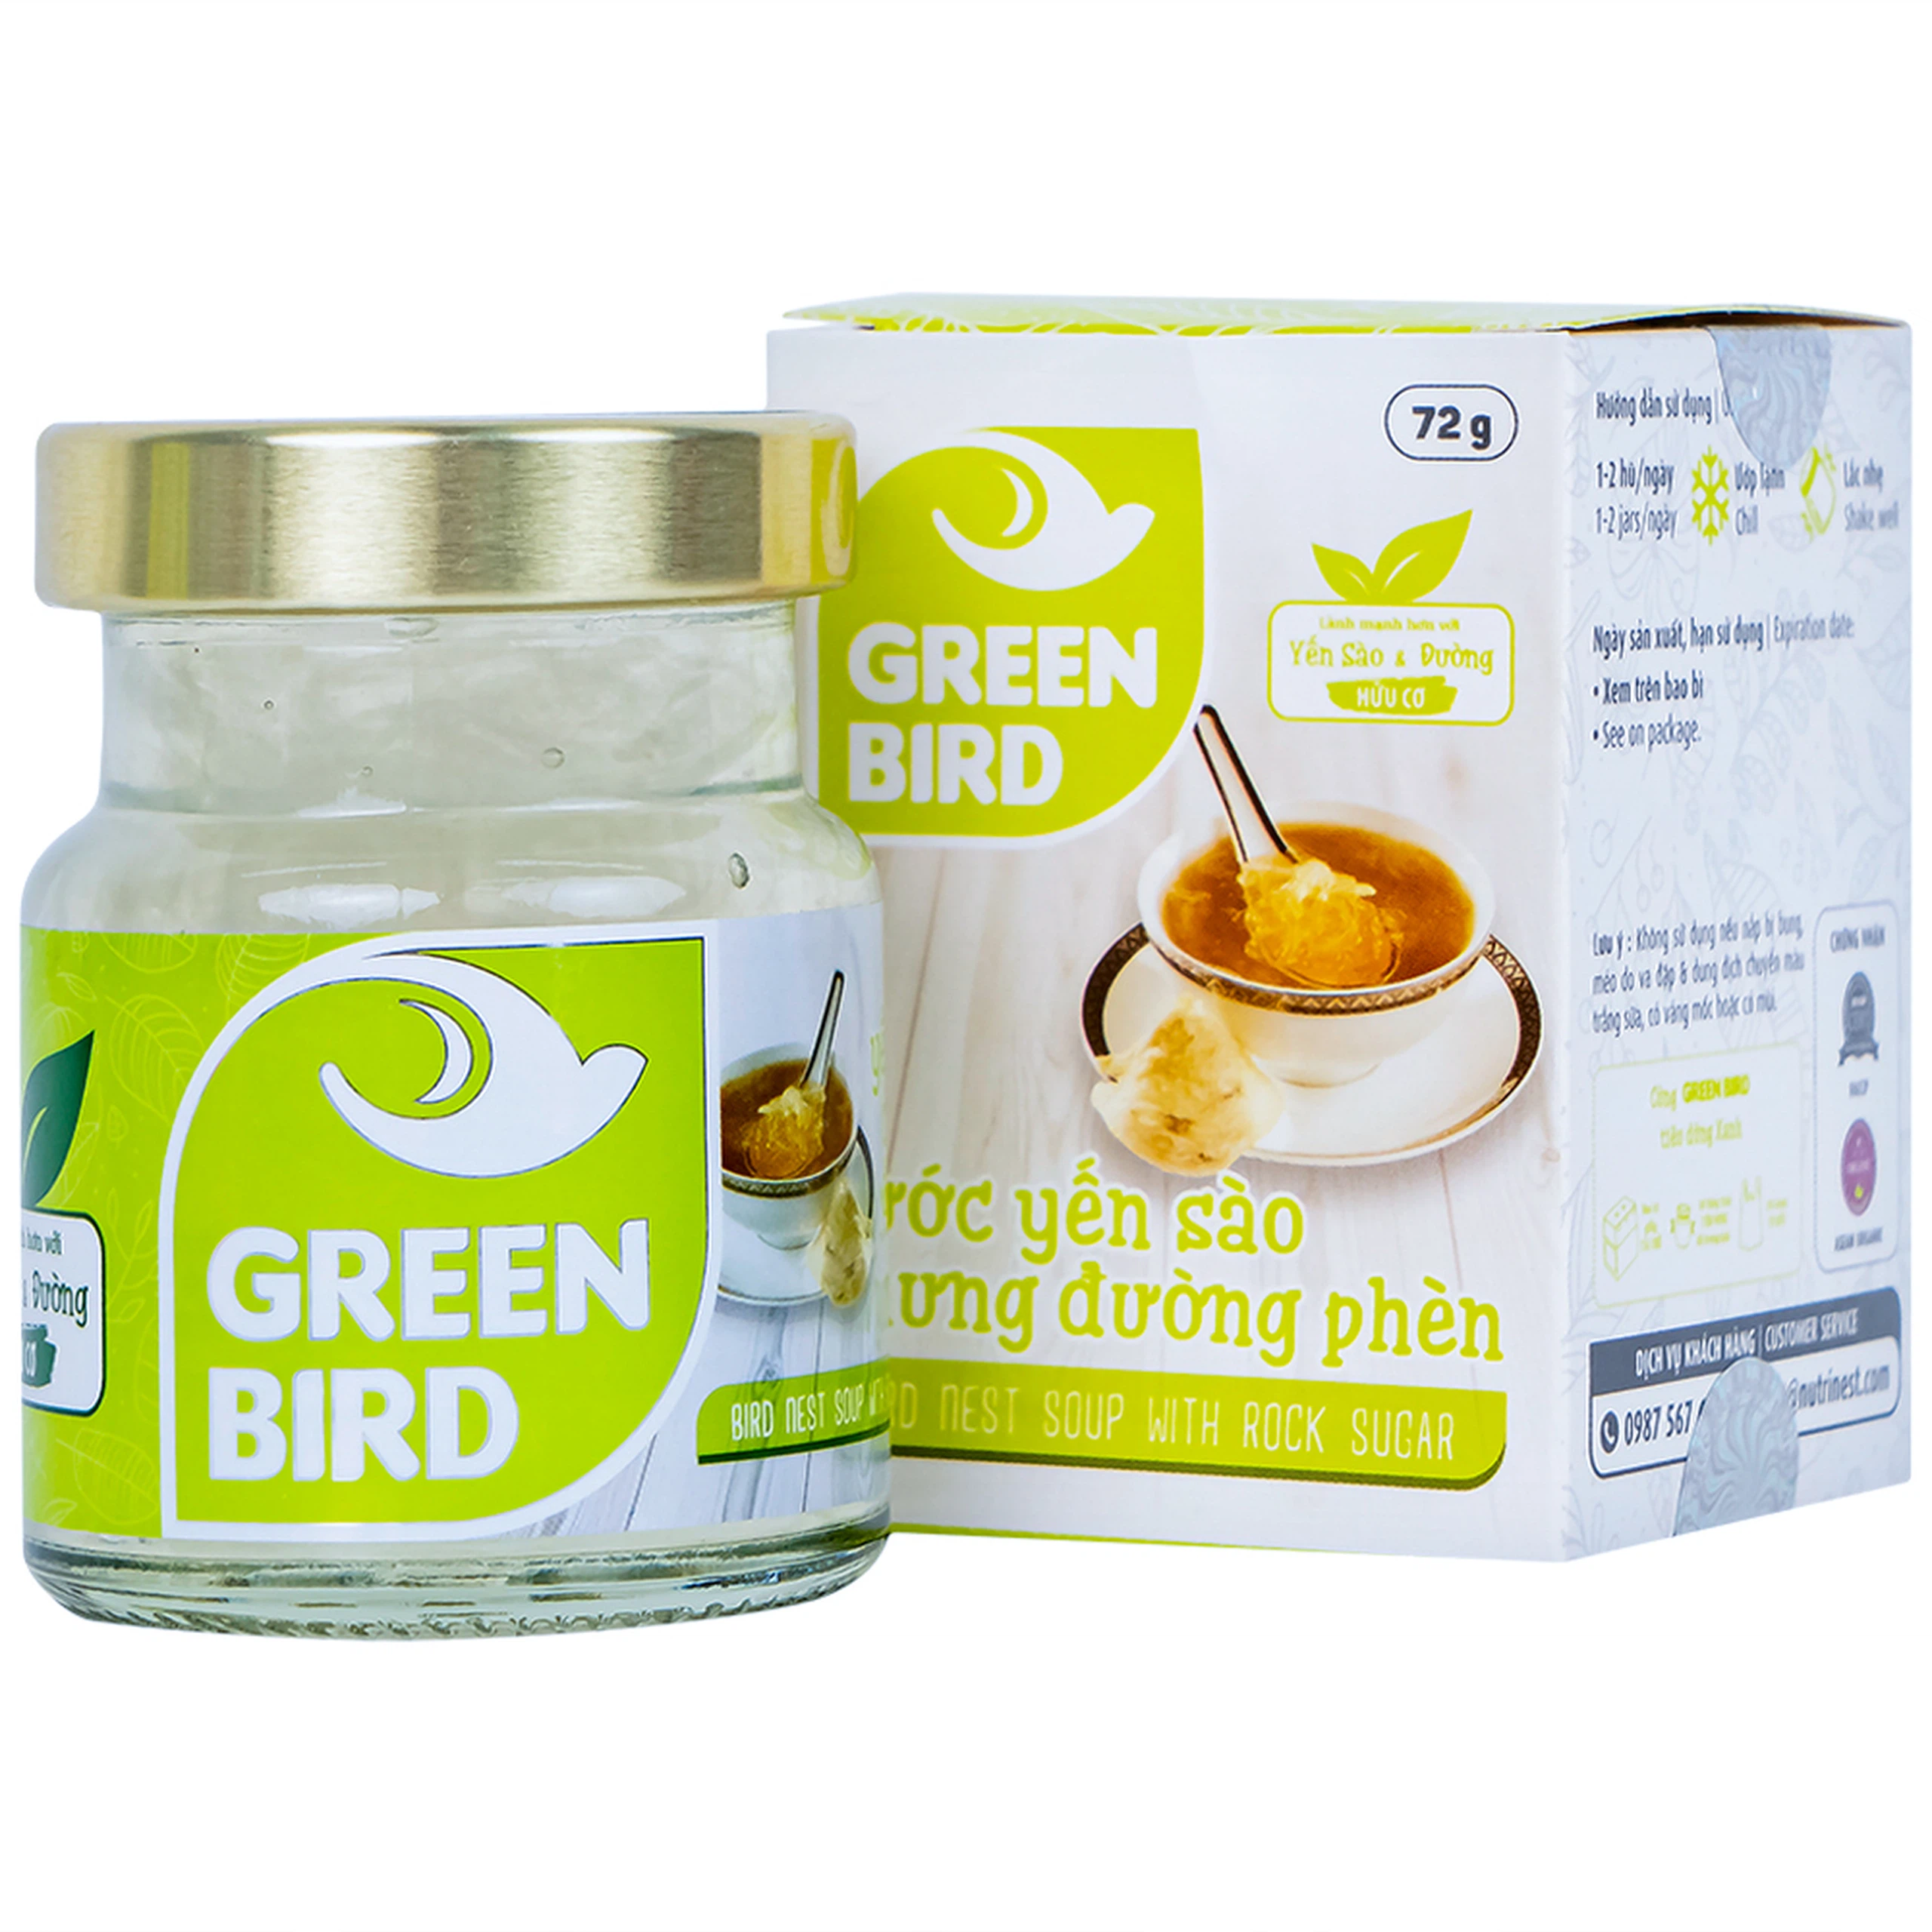 Nước Yến Sào chưng đường phèn Greenbird bồi bổ cơ thể, ngăn ngừa lão hóa (72g) 